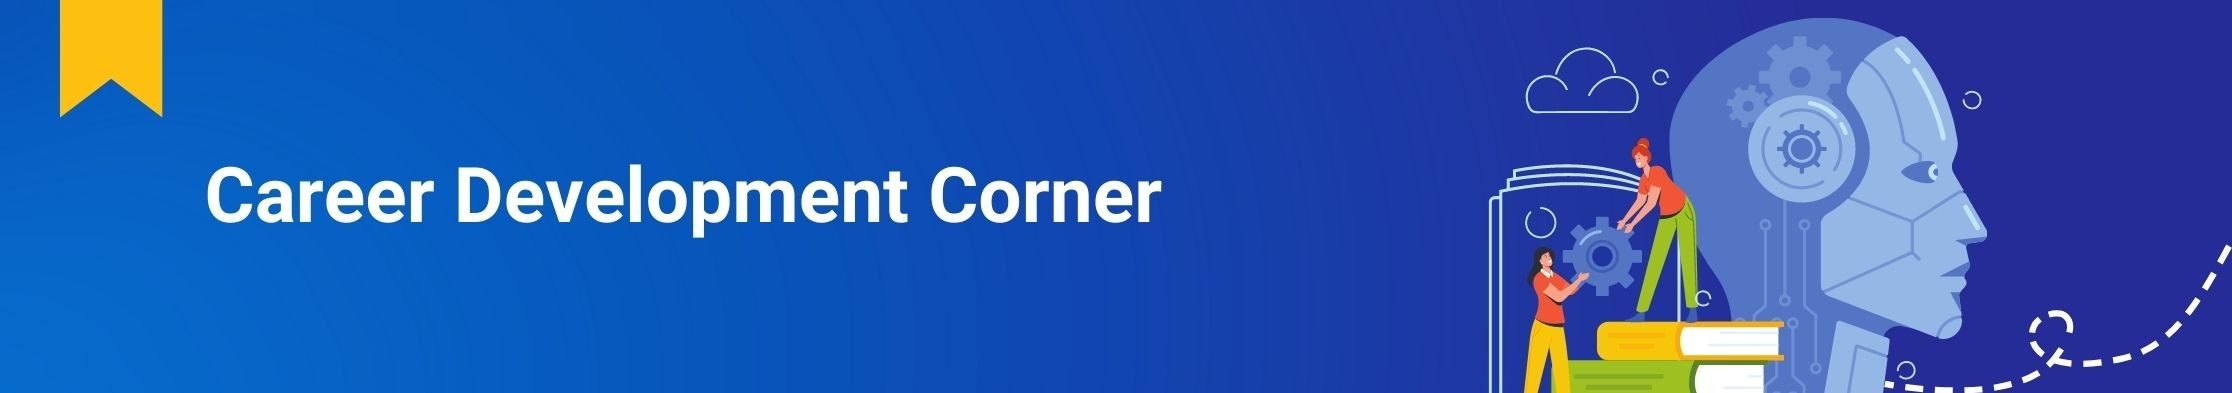 Career_development_corner_Newsletter_Section